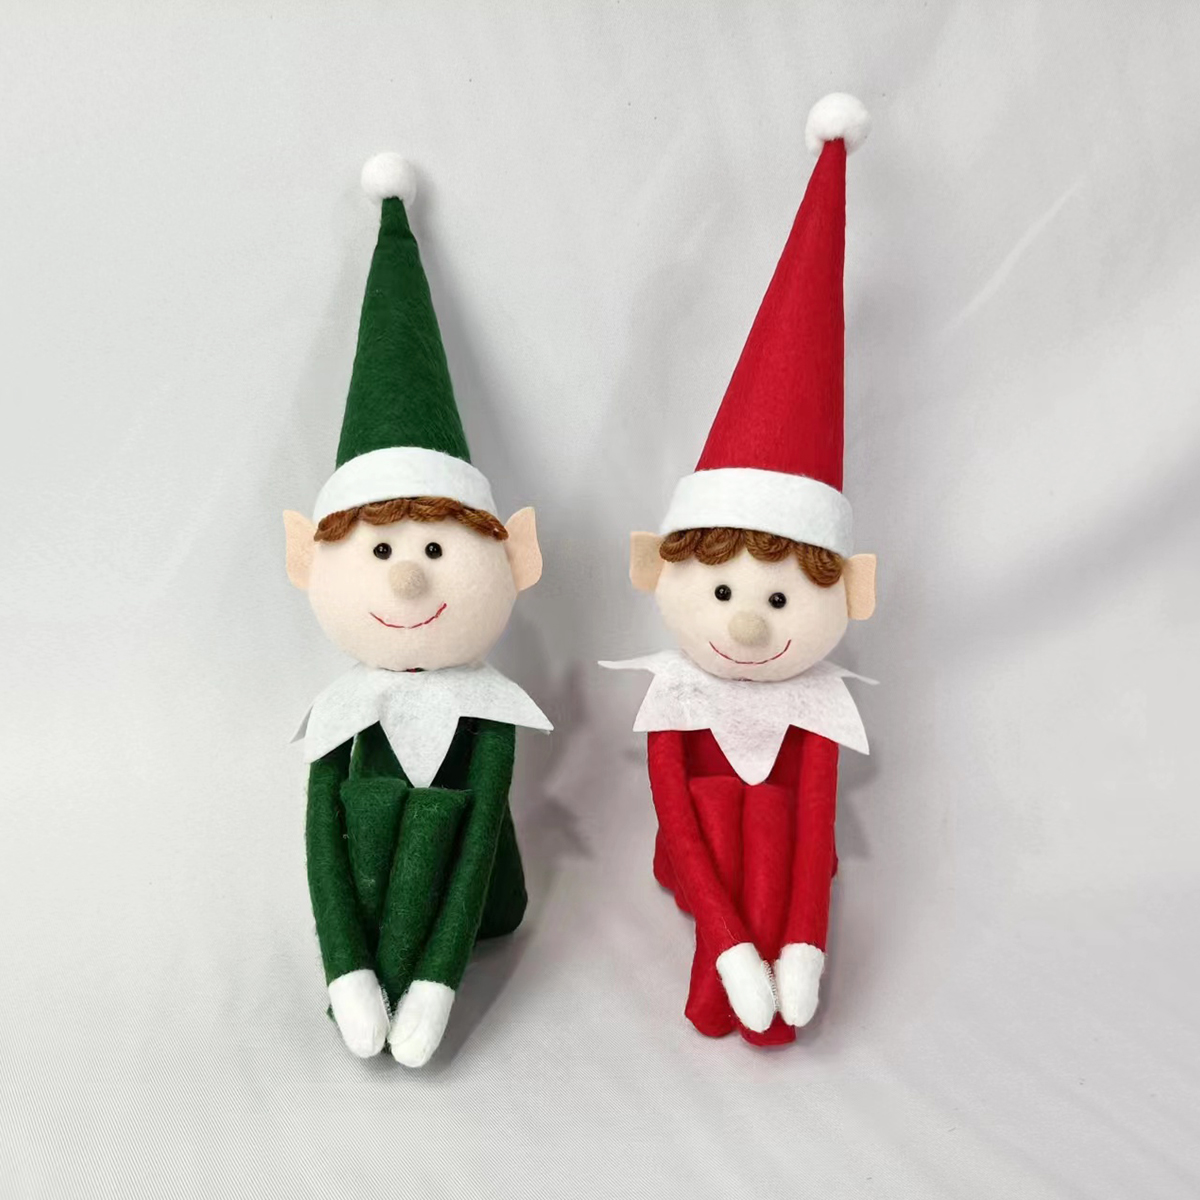 Милая рождественская мини-кукла-эльф — праздничная игрушка для праздничного веселья!